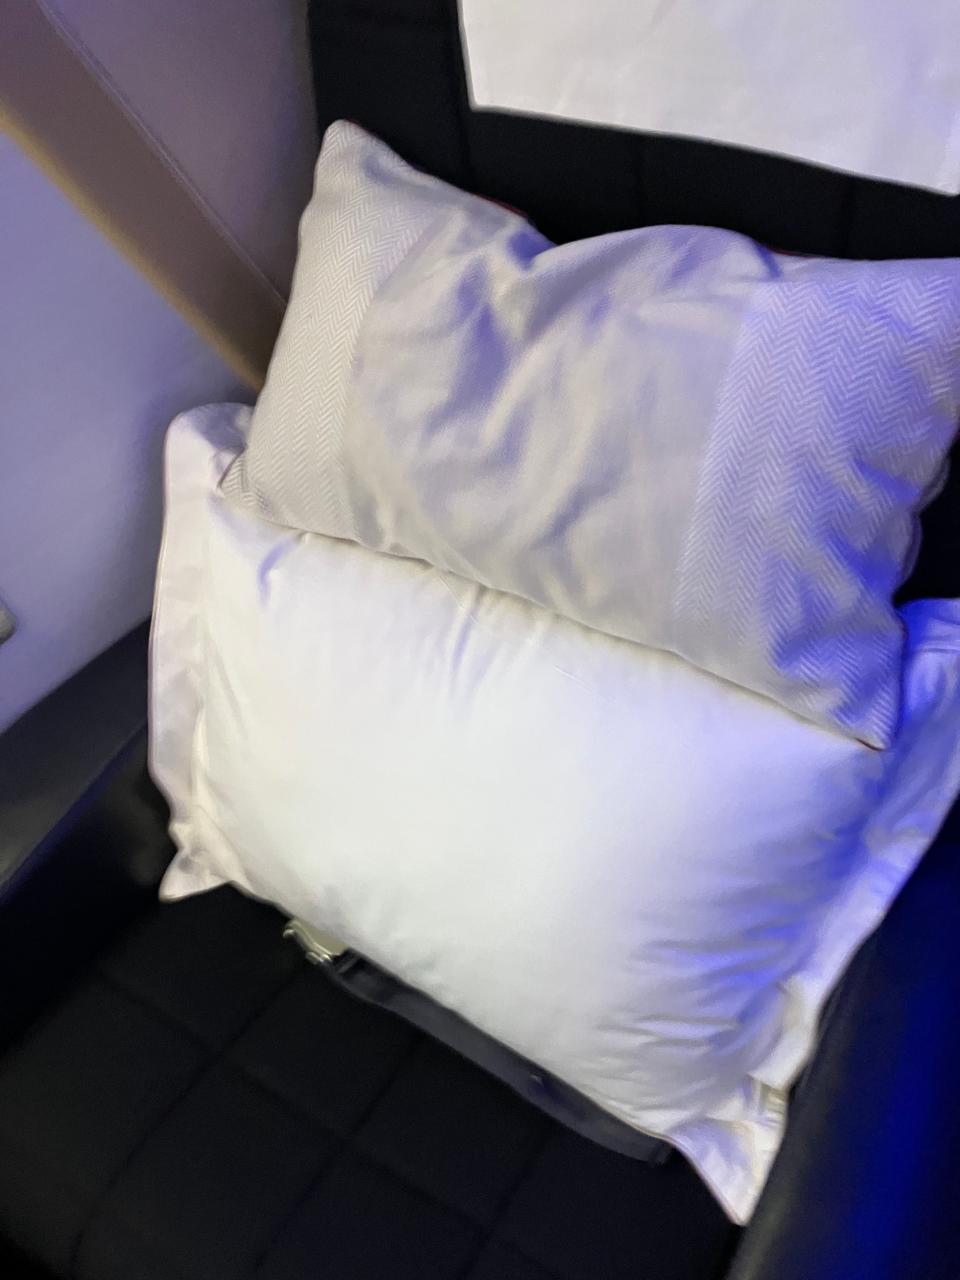 First class seat on British Airways